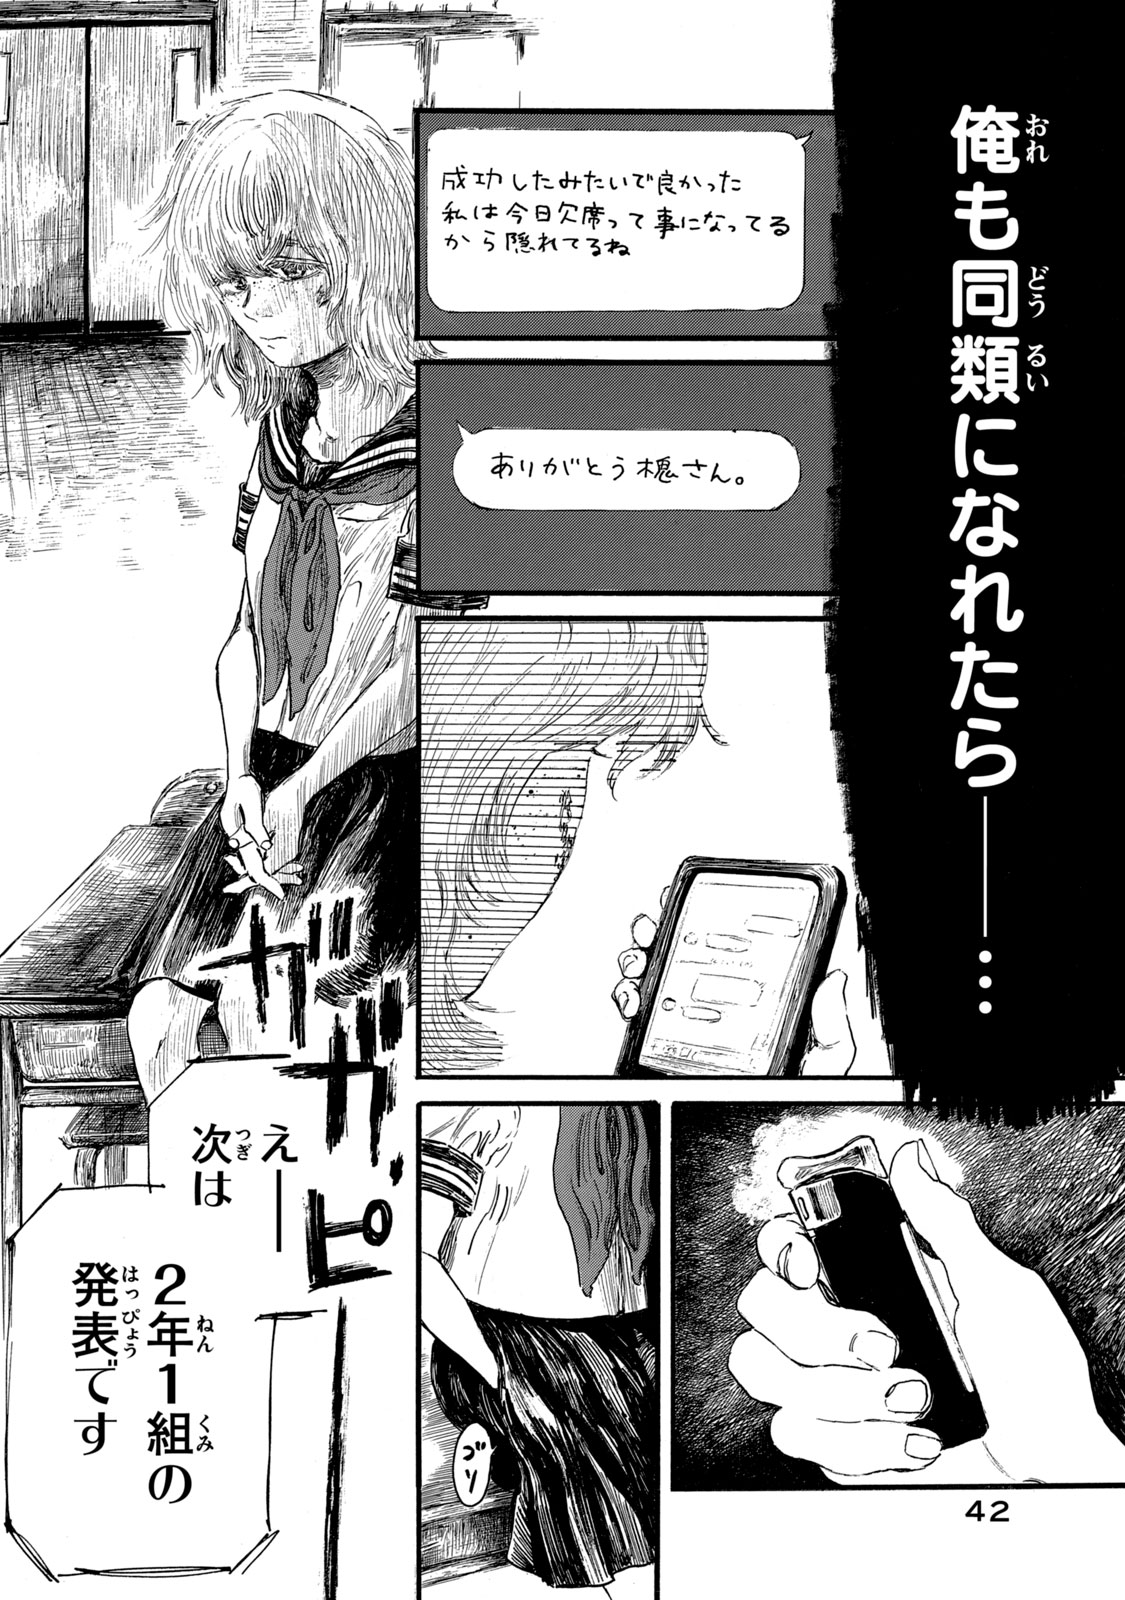 Watashi no Hara no Naka no Bakemono - Chapter 9 - Page 16